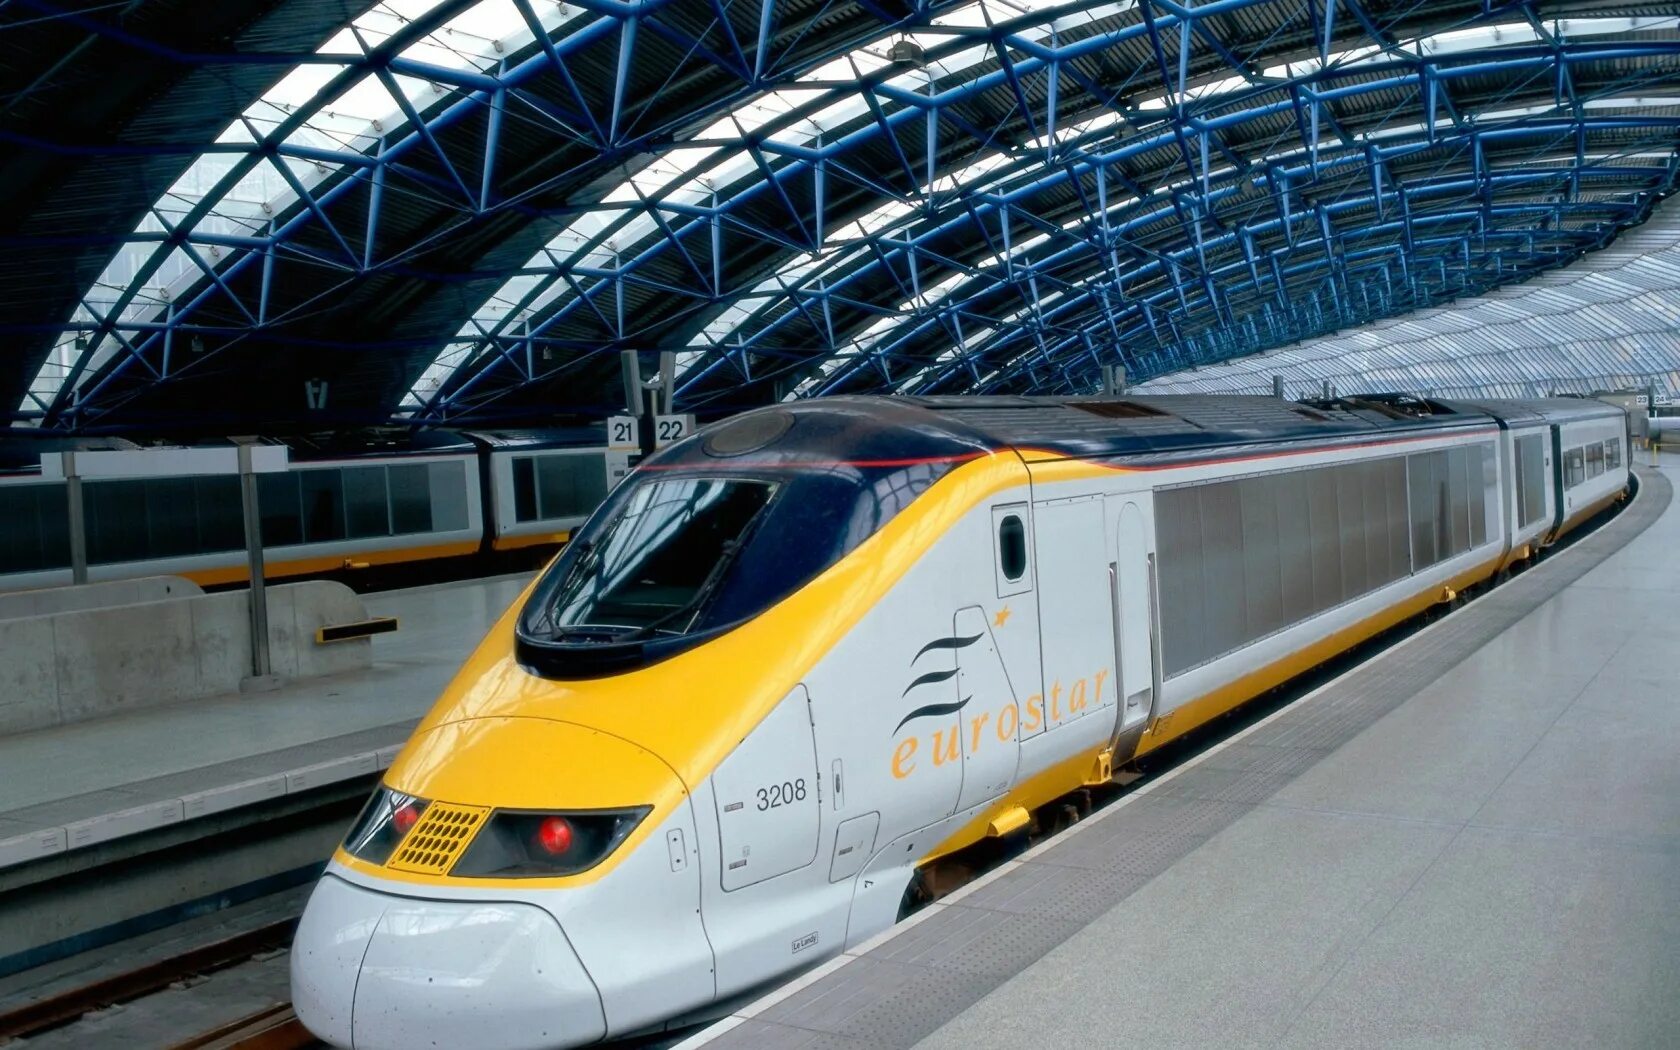 Скоростной поезд Евростар. Поезд Евростар Лондон. Скоростной поезд TGV Eurostar. Высокоскоростные поезда Eurostar.